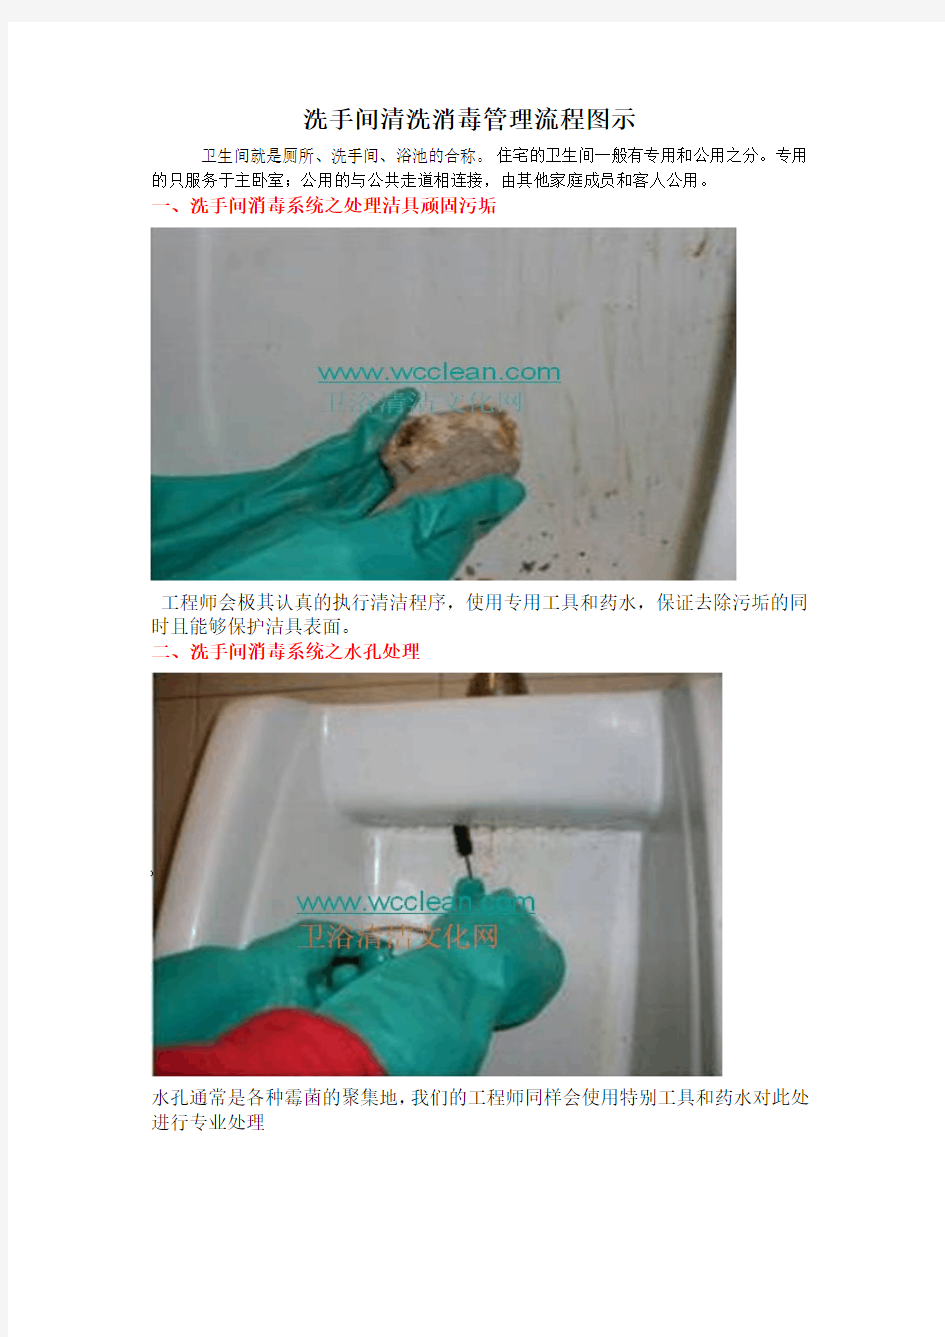 洗手间清洗消毒管理流程图示